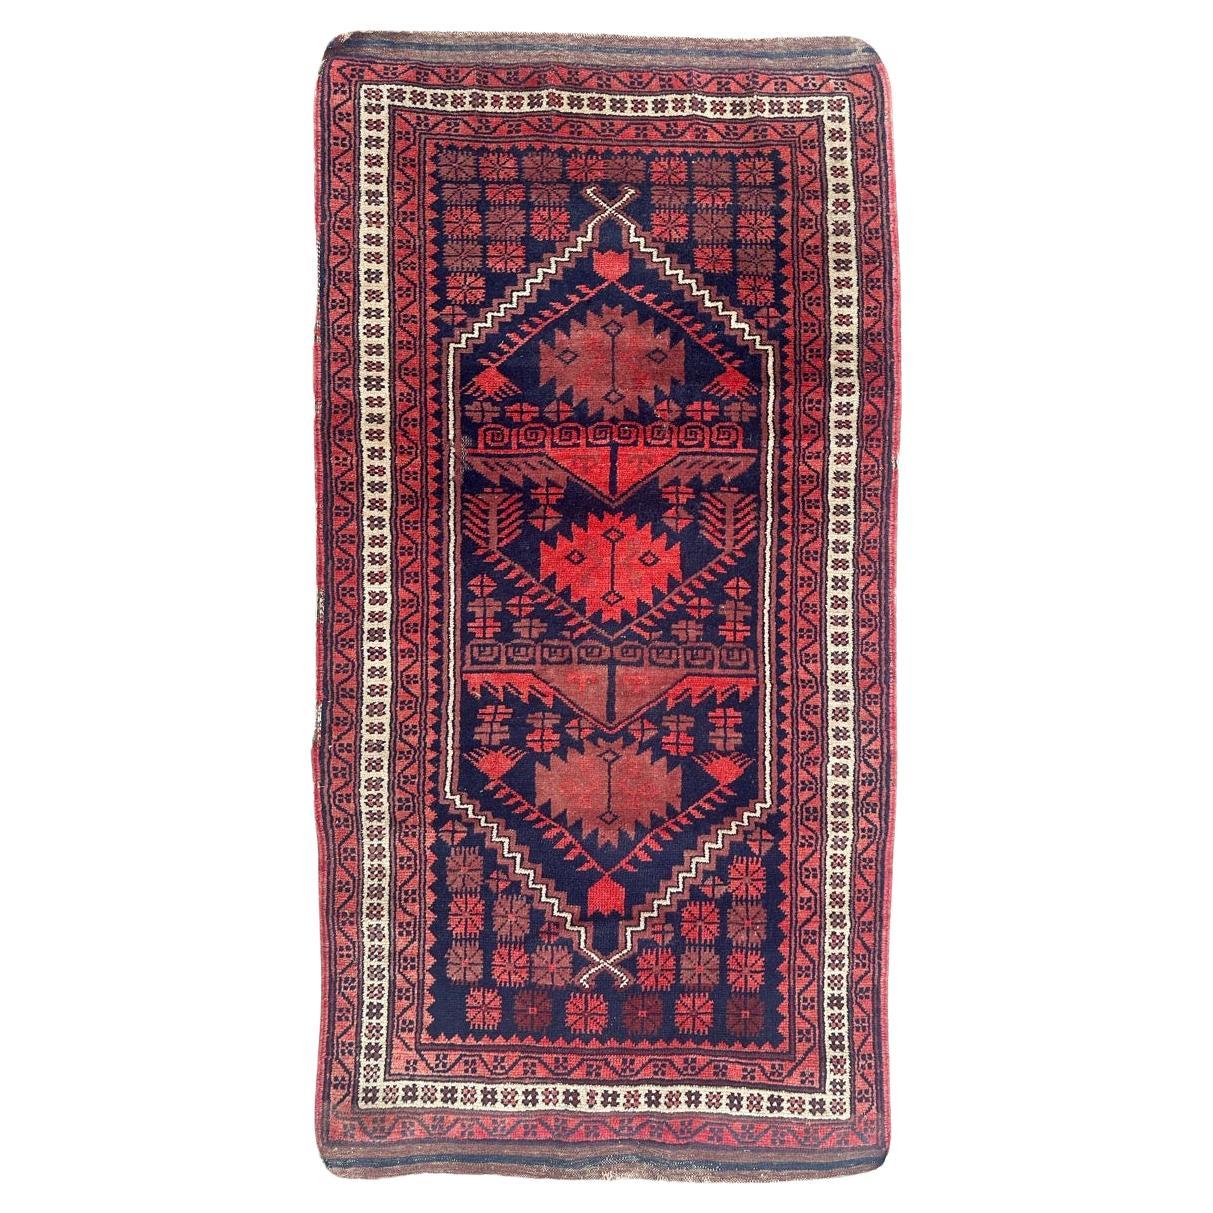 Bobyrugs schöner alter türkischer Teppich 